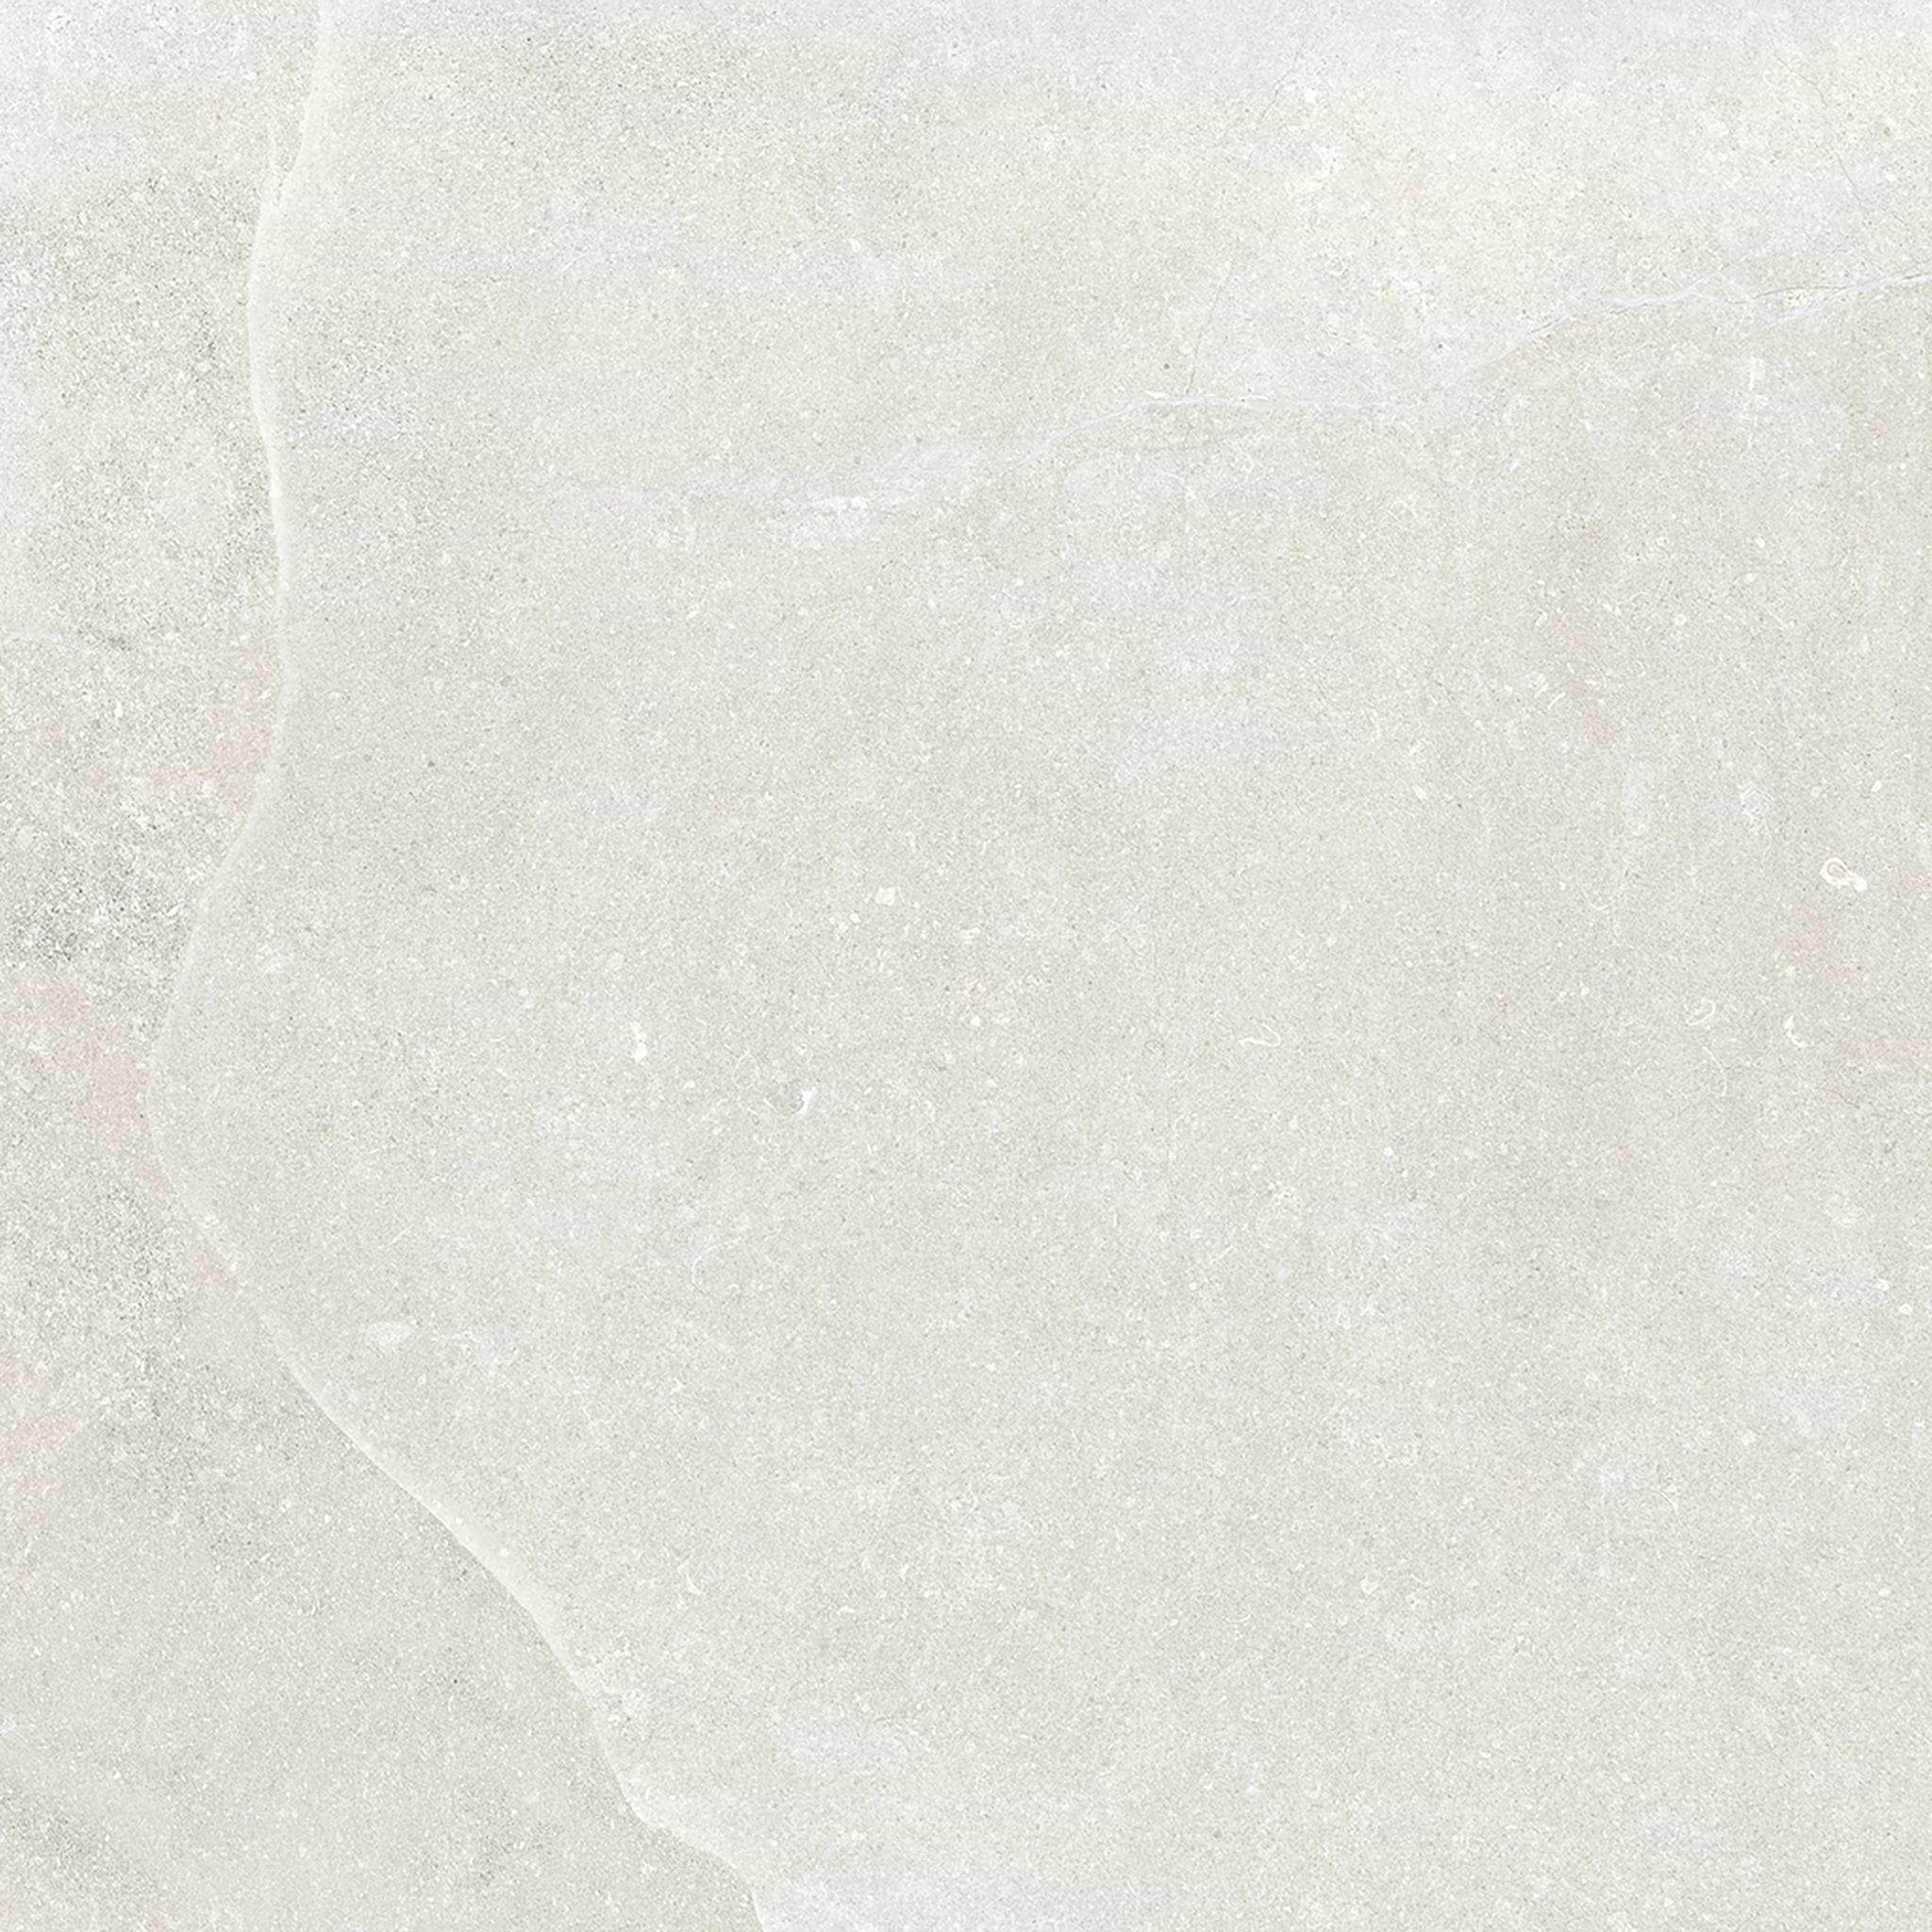 Dorset Porcelain White 80 x 80cm - Hyperion Tiles